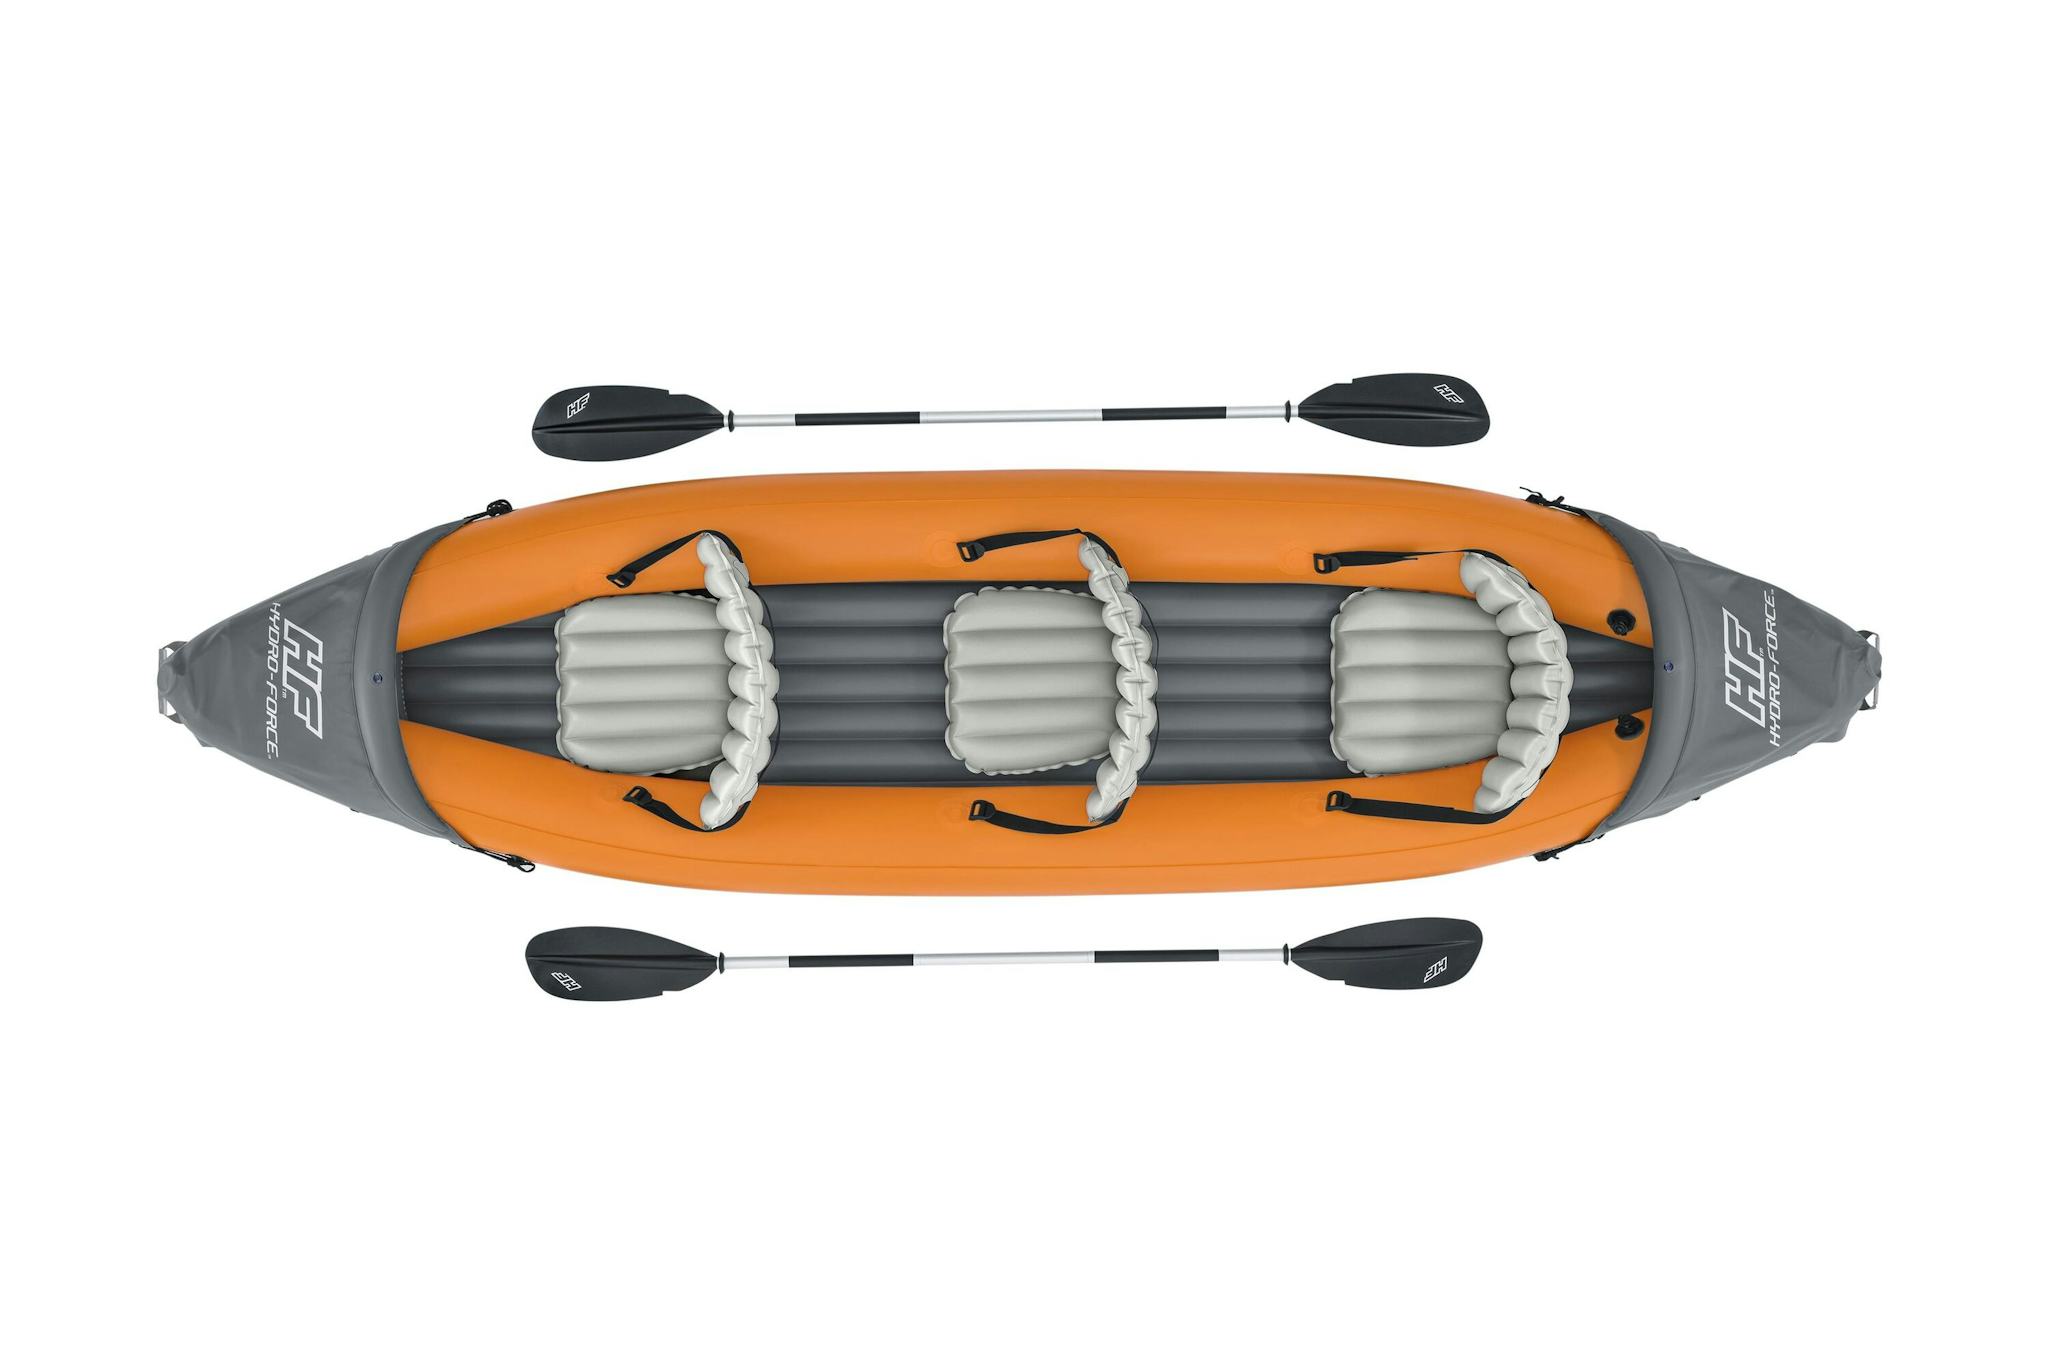 Sports d'eau Kayak gonflable Rapide X3 Hydro-Force™ 381 x 100cm, 3 places, 250 kg max, 2 pagaies, 2 ailerons amovibles et une pompe Bestway 4